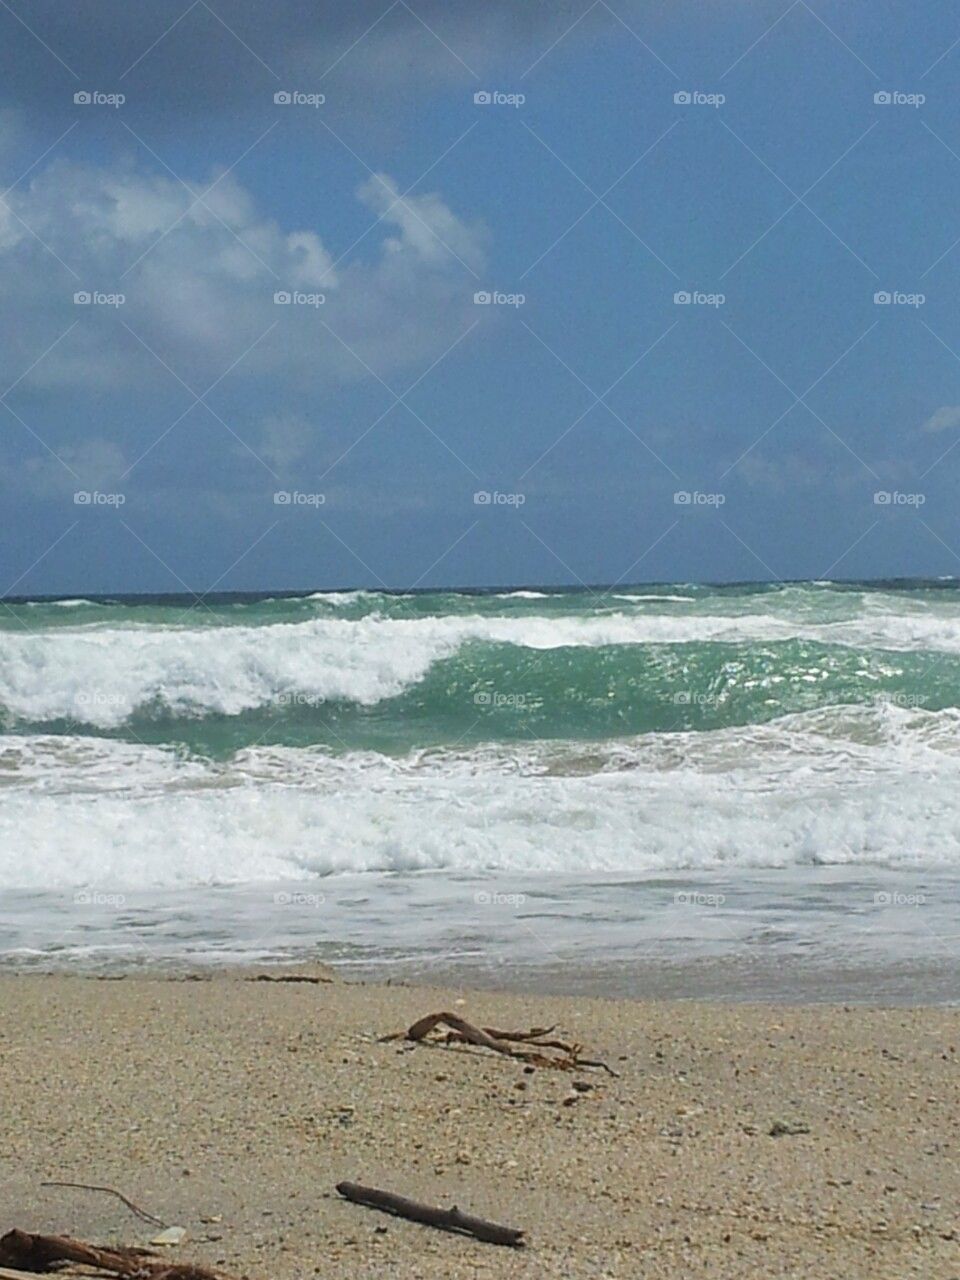 Waves crashing Sebastian beach